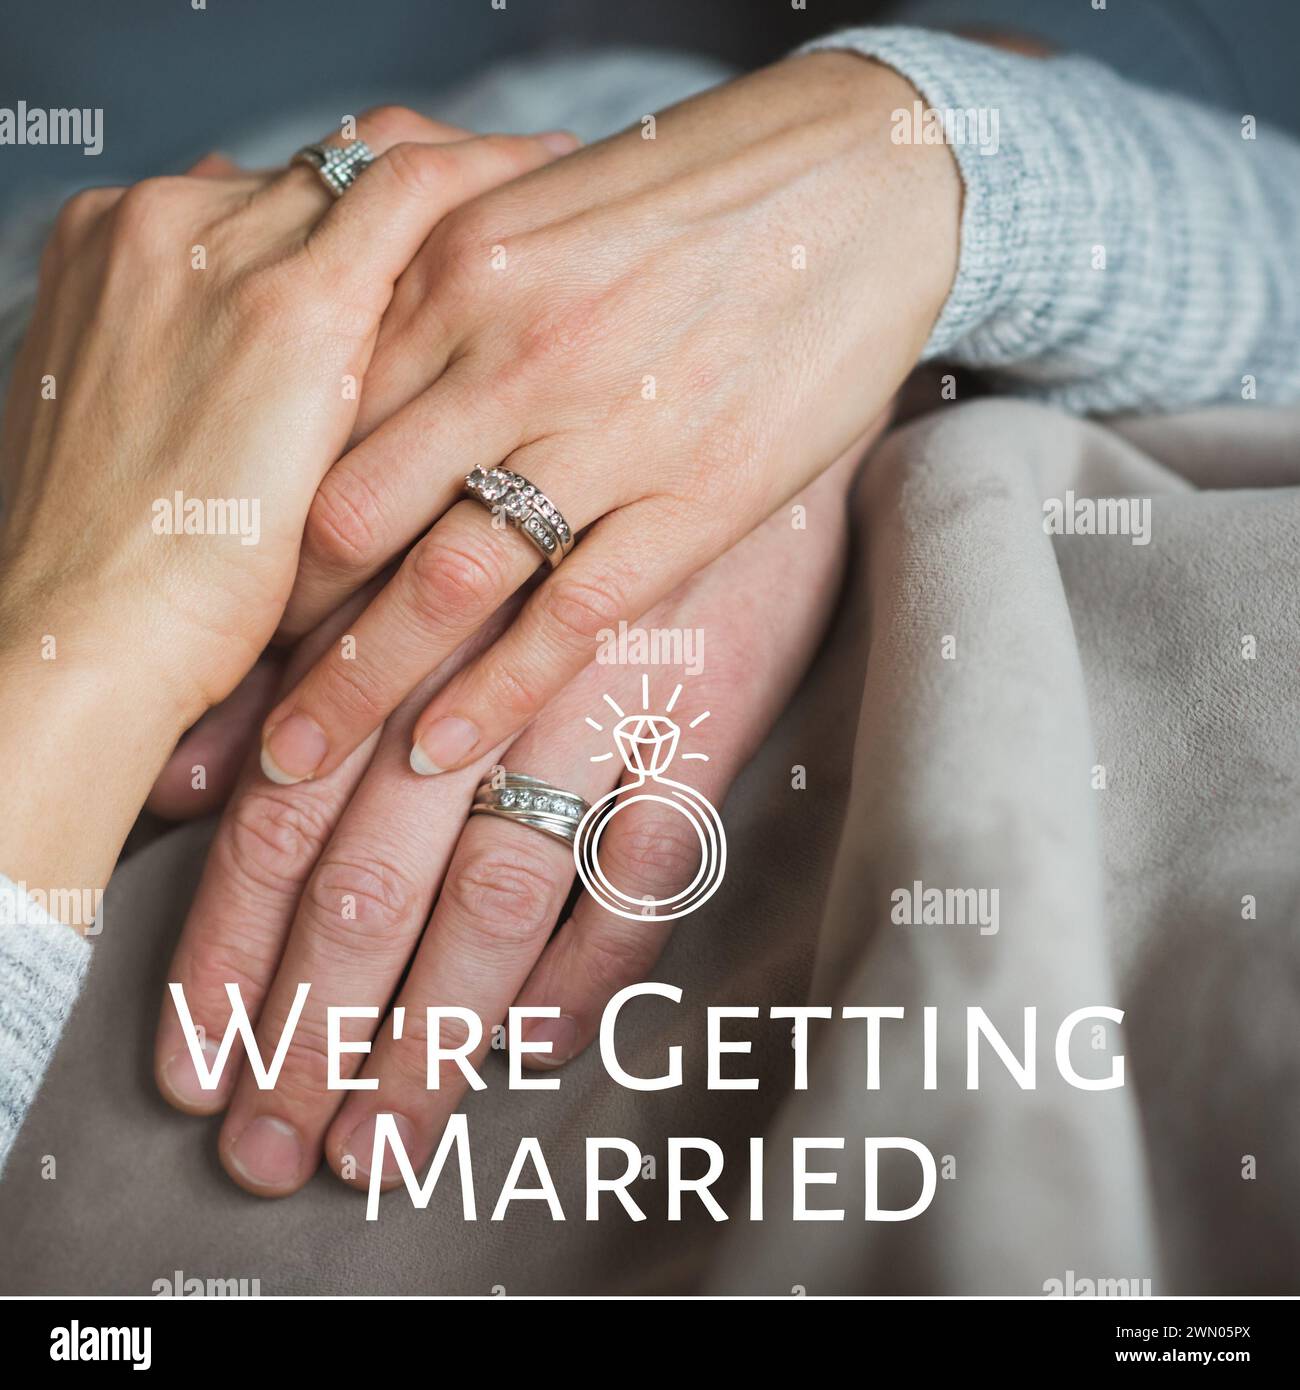 Célébrant l'amour et l'engagement, l'image présente des mains entrelacées ornées de bagues de fiançailles Banque D'Images